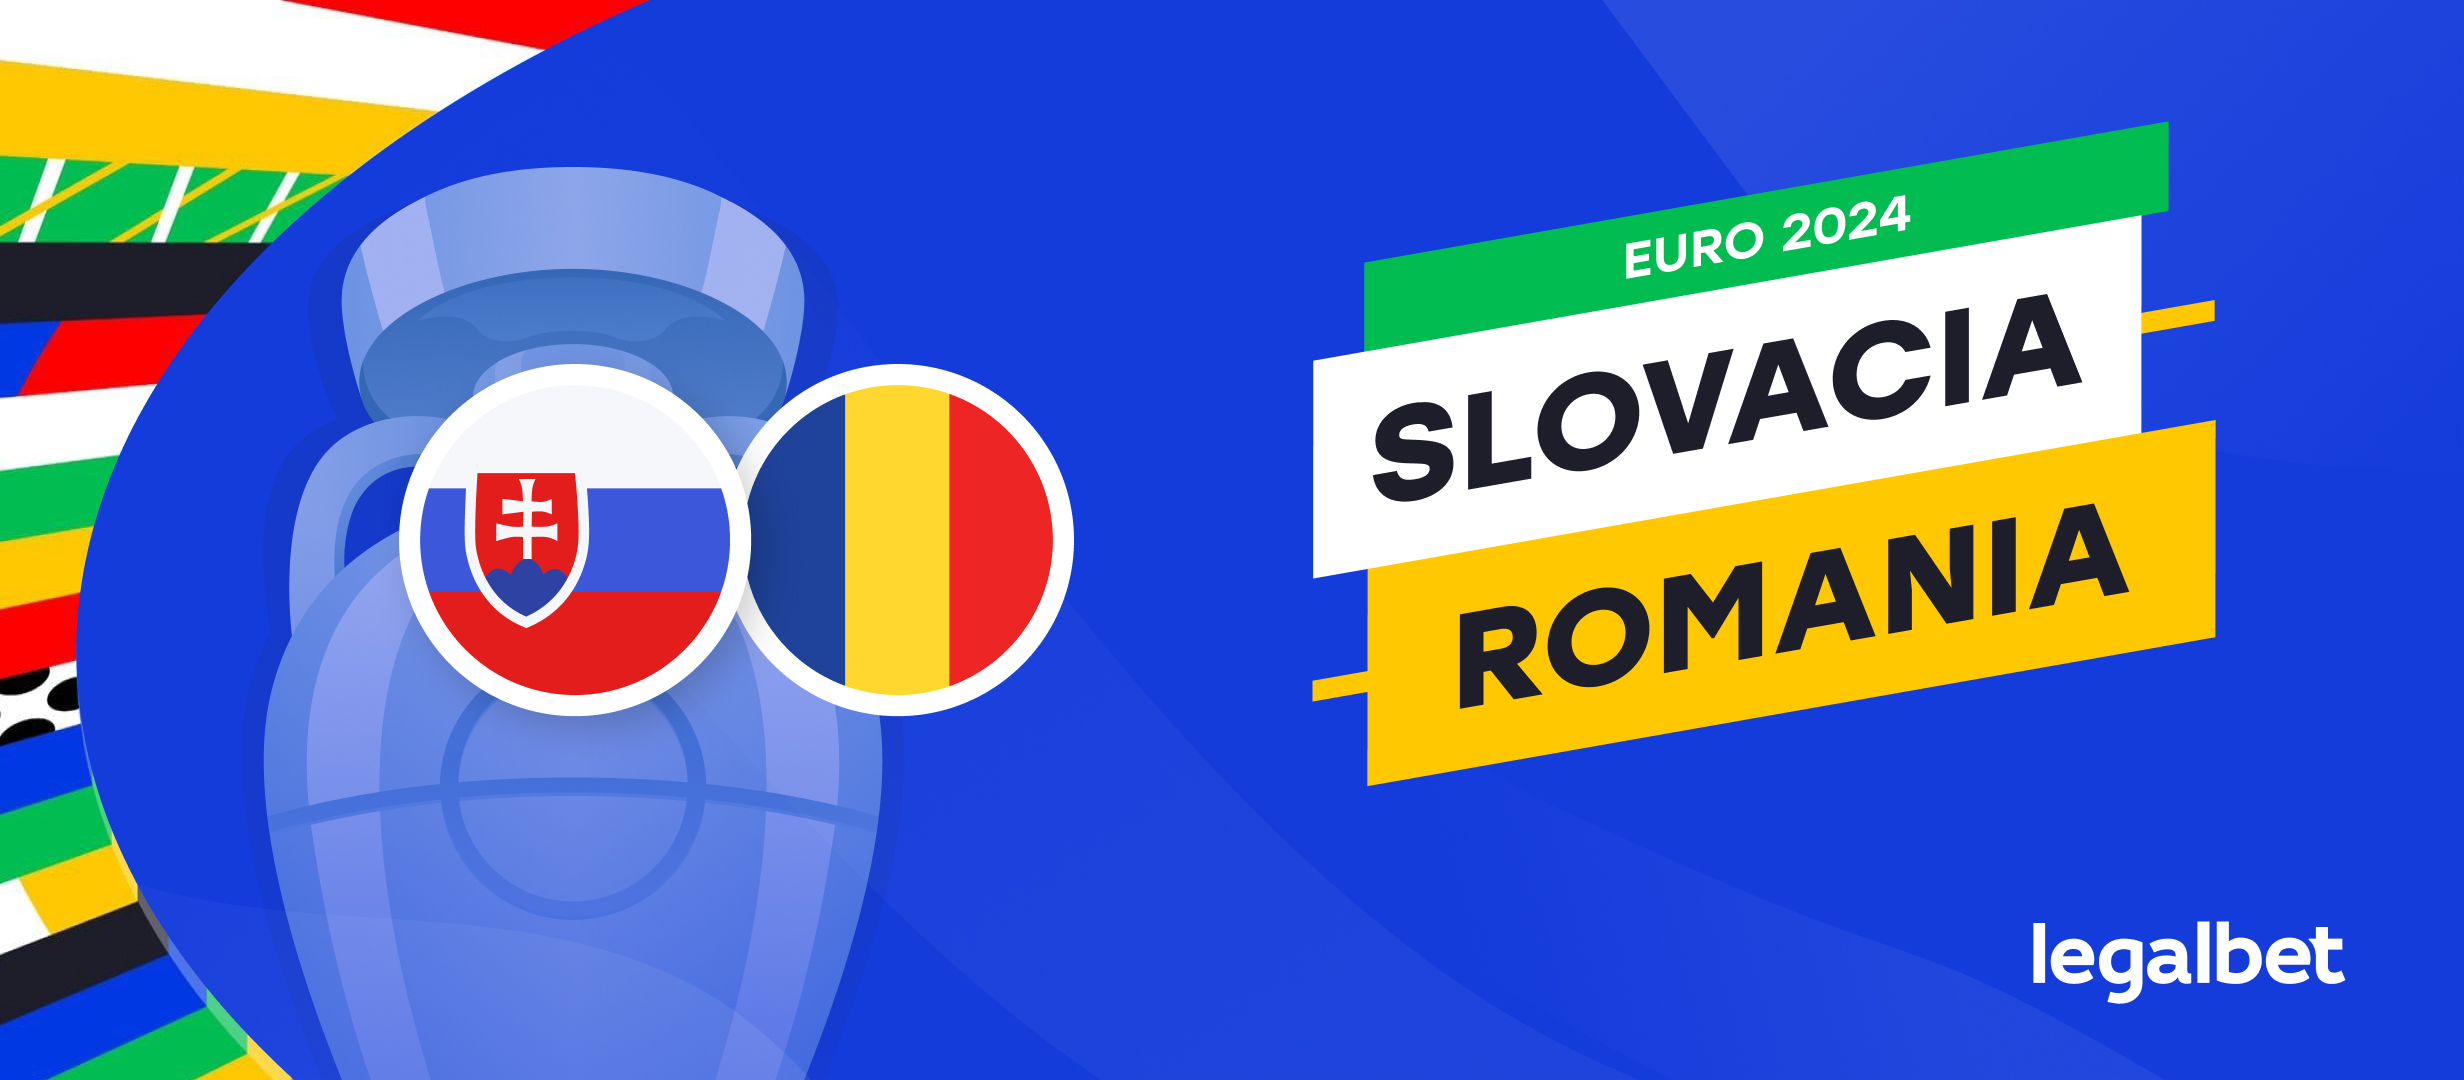 Ponturi Slovacia vs Romania – cote la pariuri pentru EURO 2024